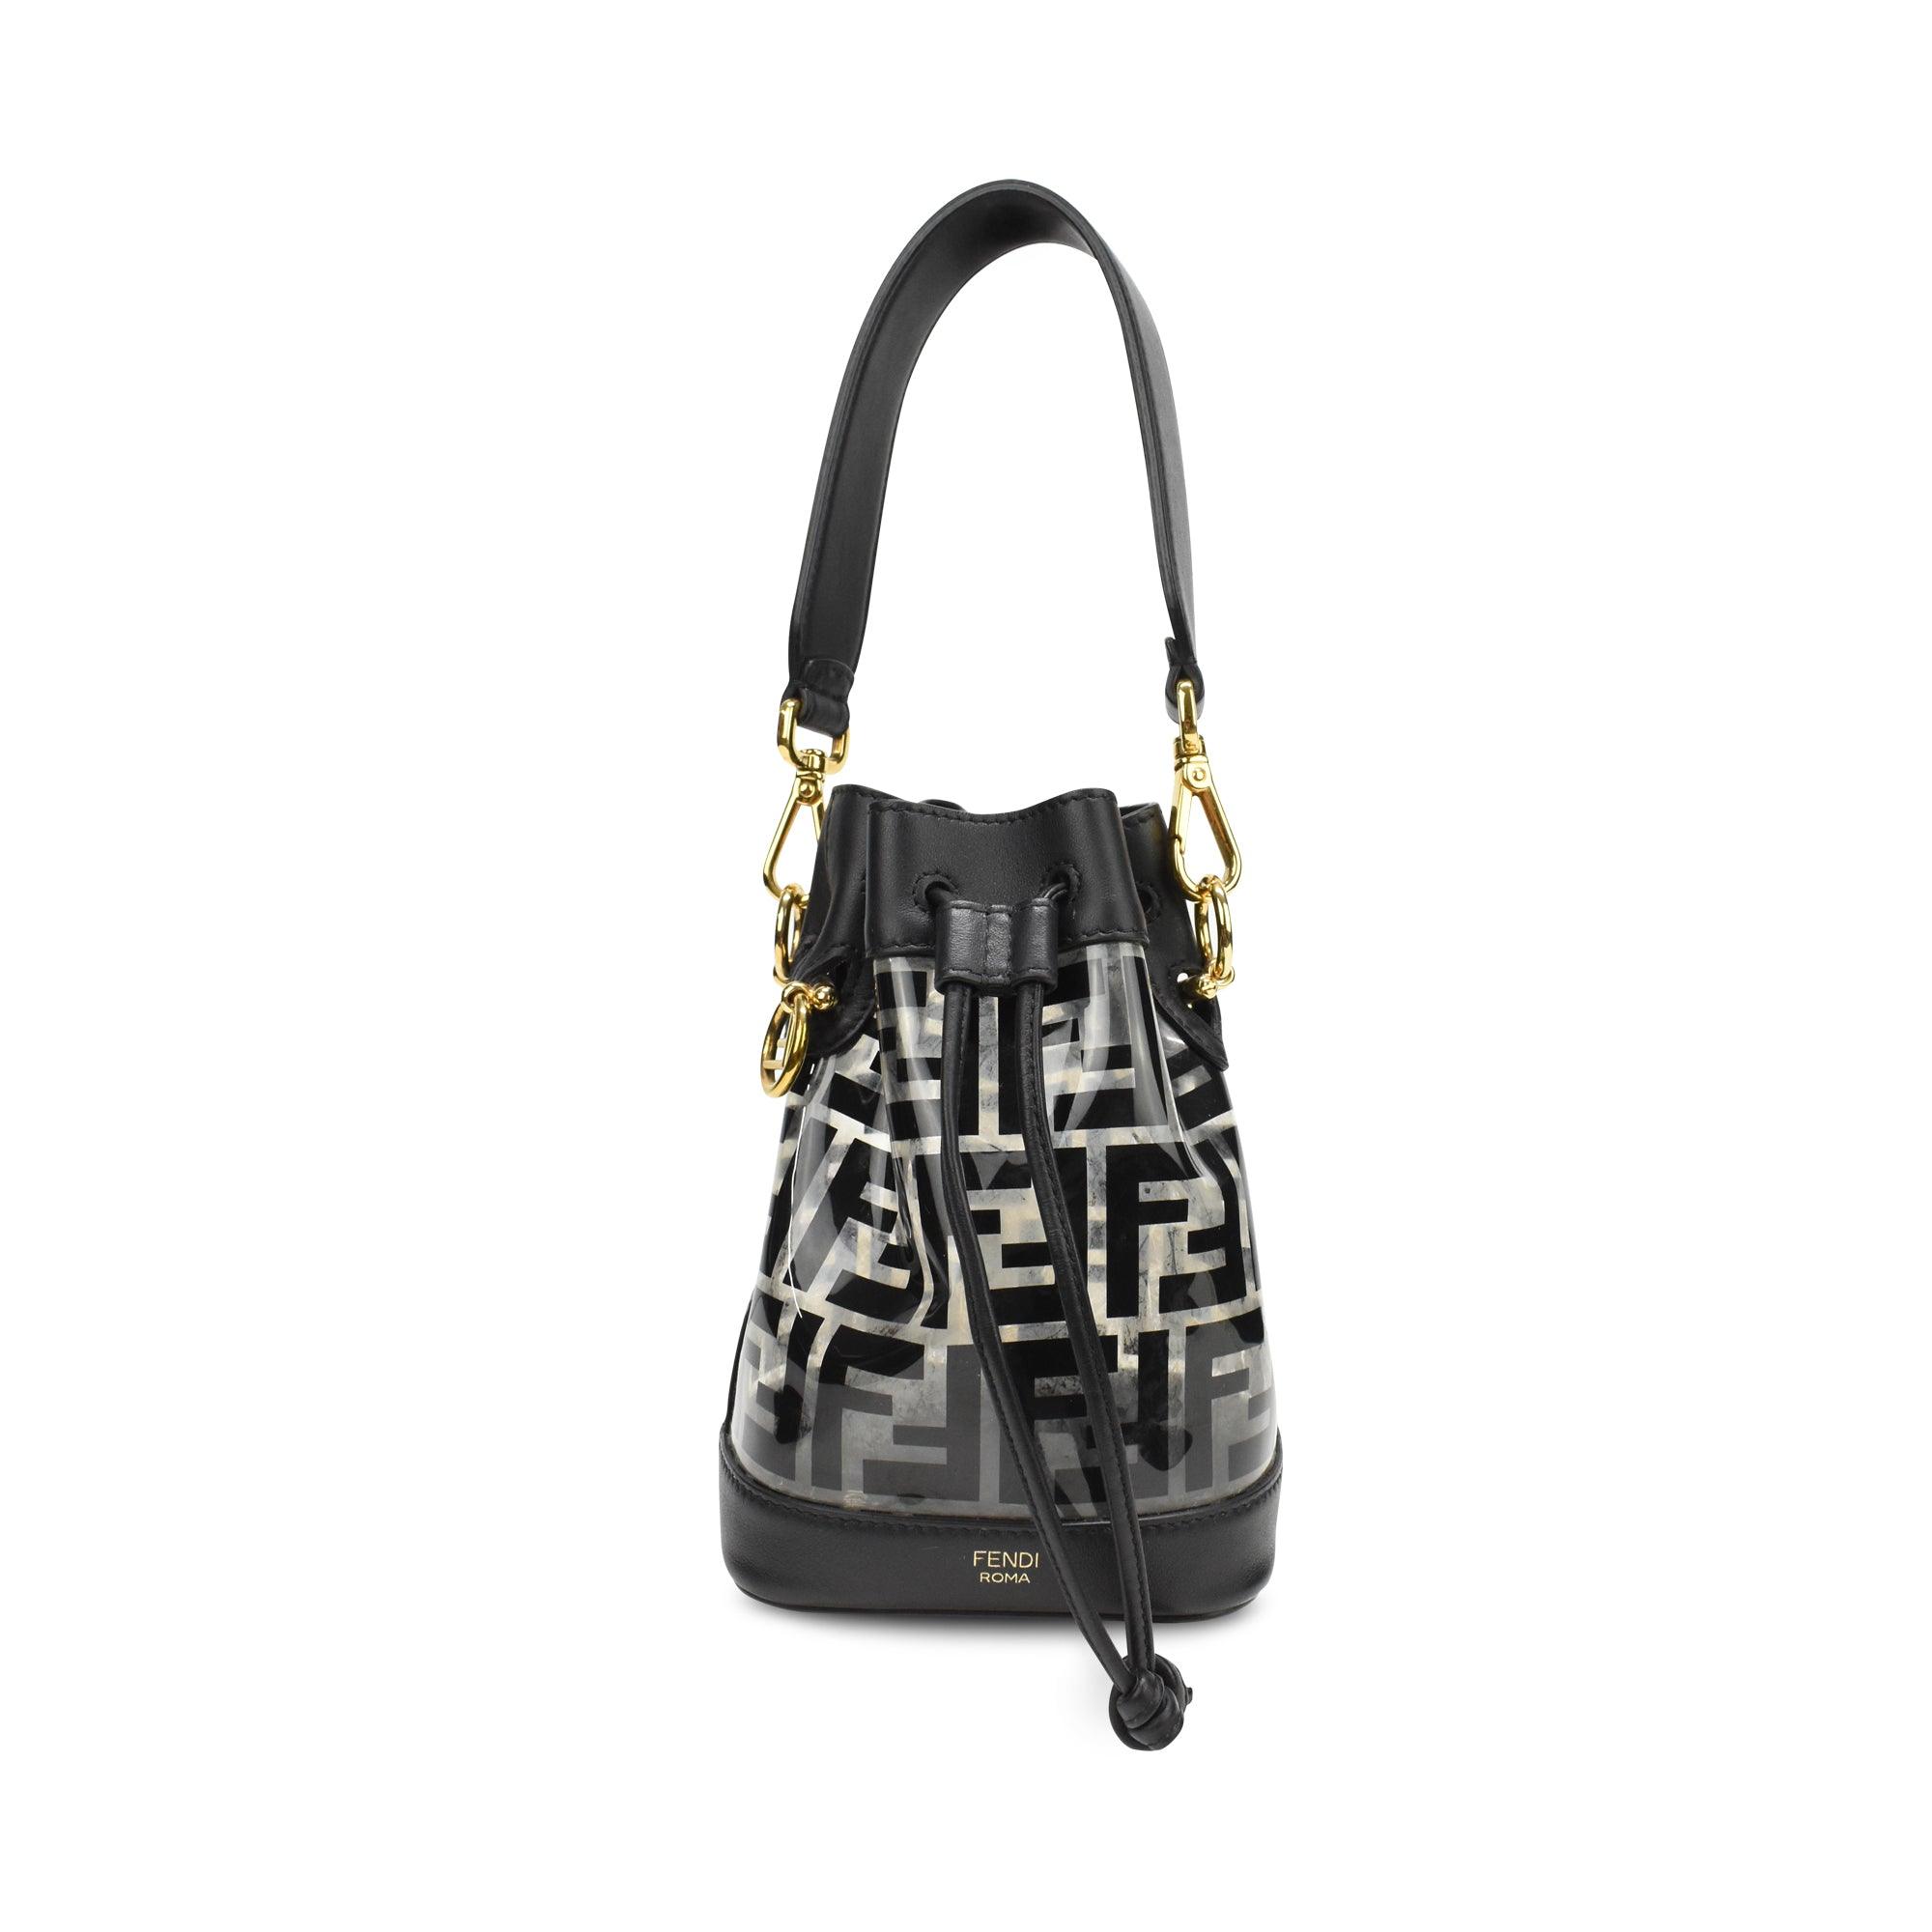 Fendi Bucket Bag - Fashionably Yours